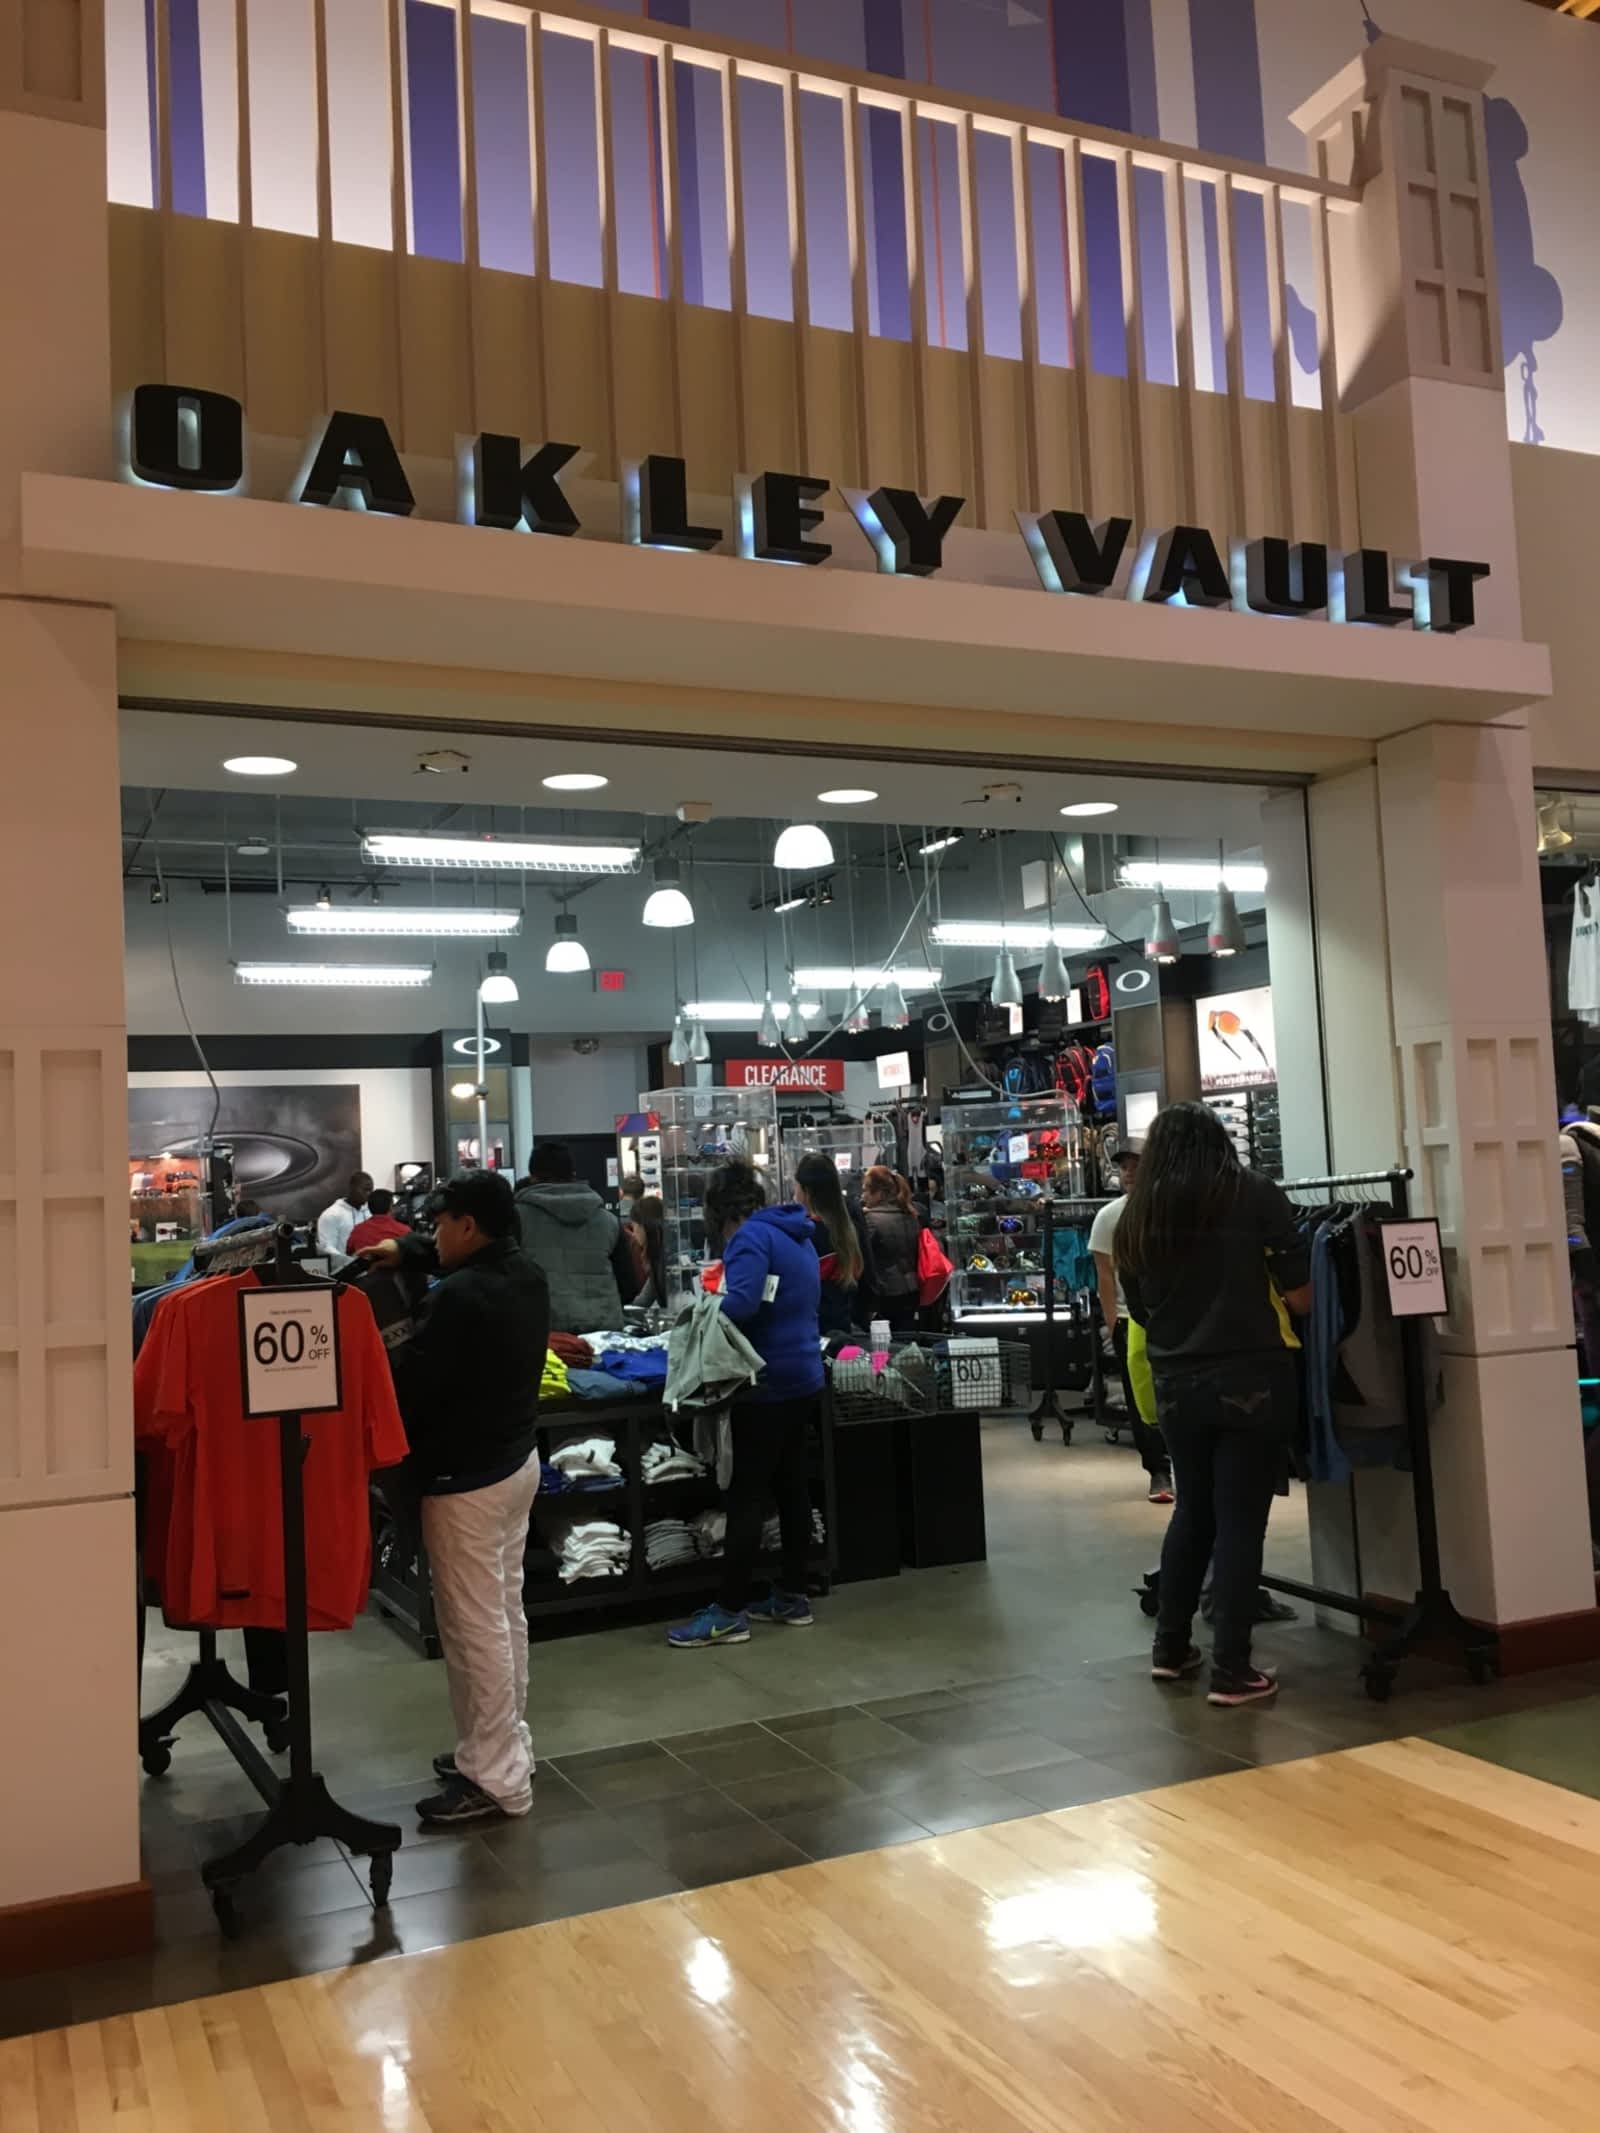 oakley vault canada